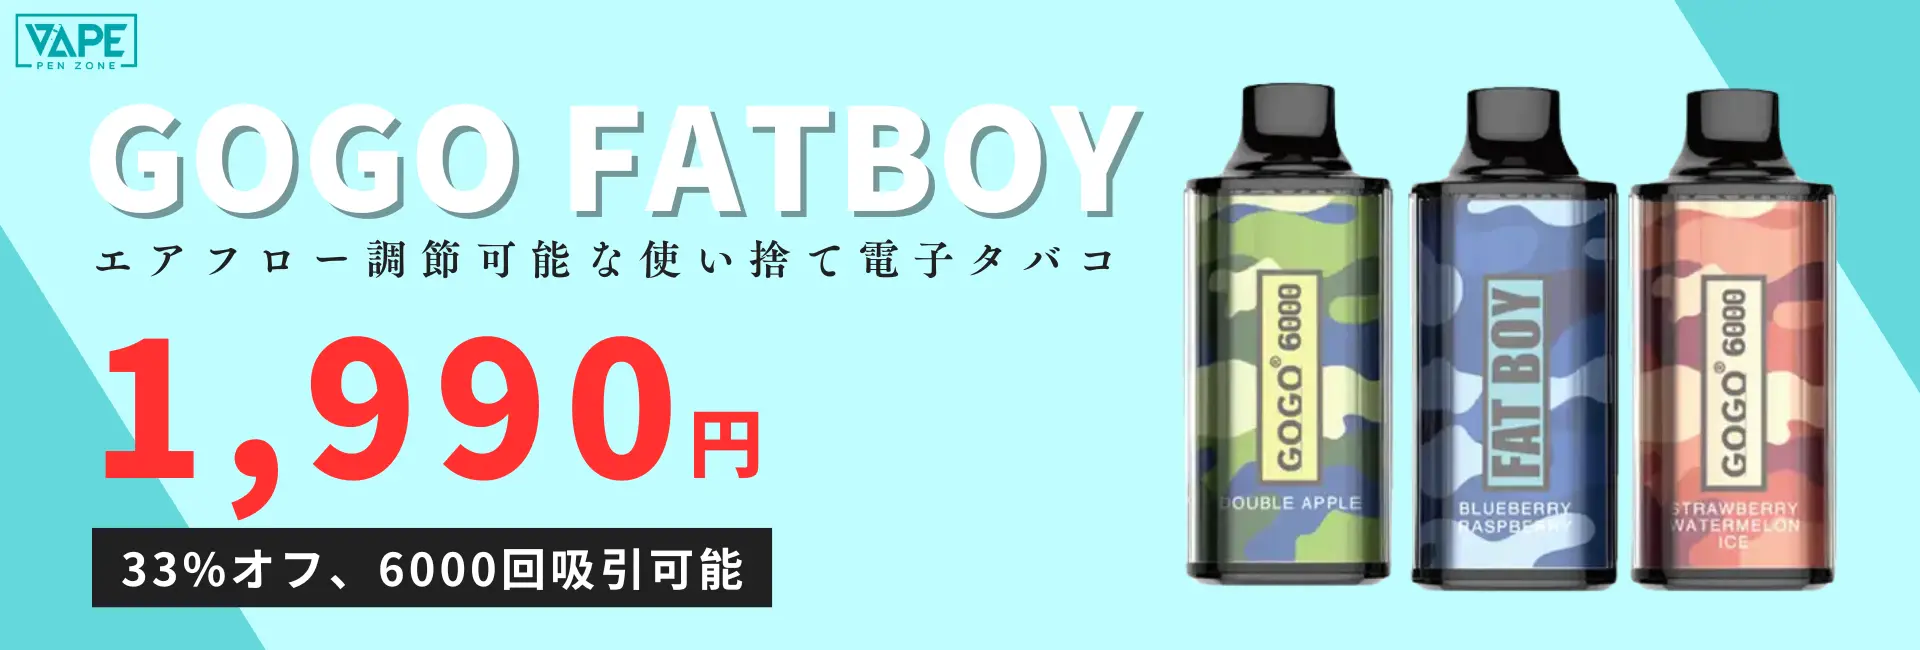 GOGO Fatboy 6000 puffs Japan